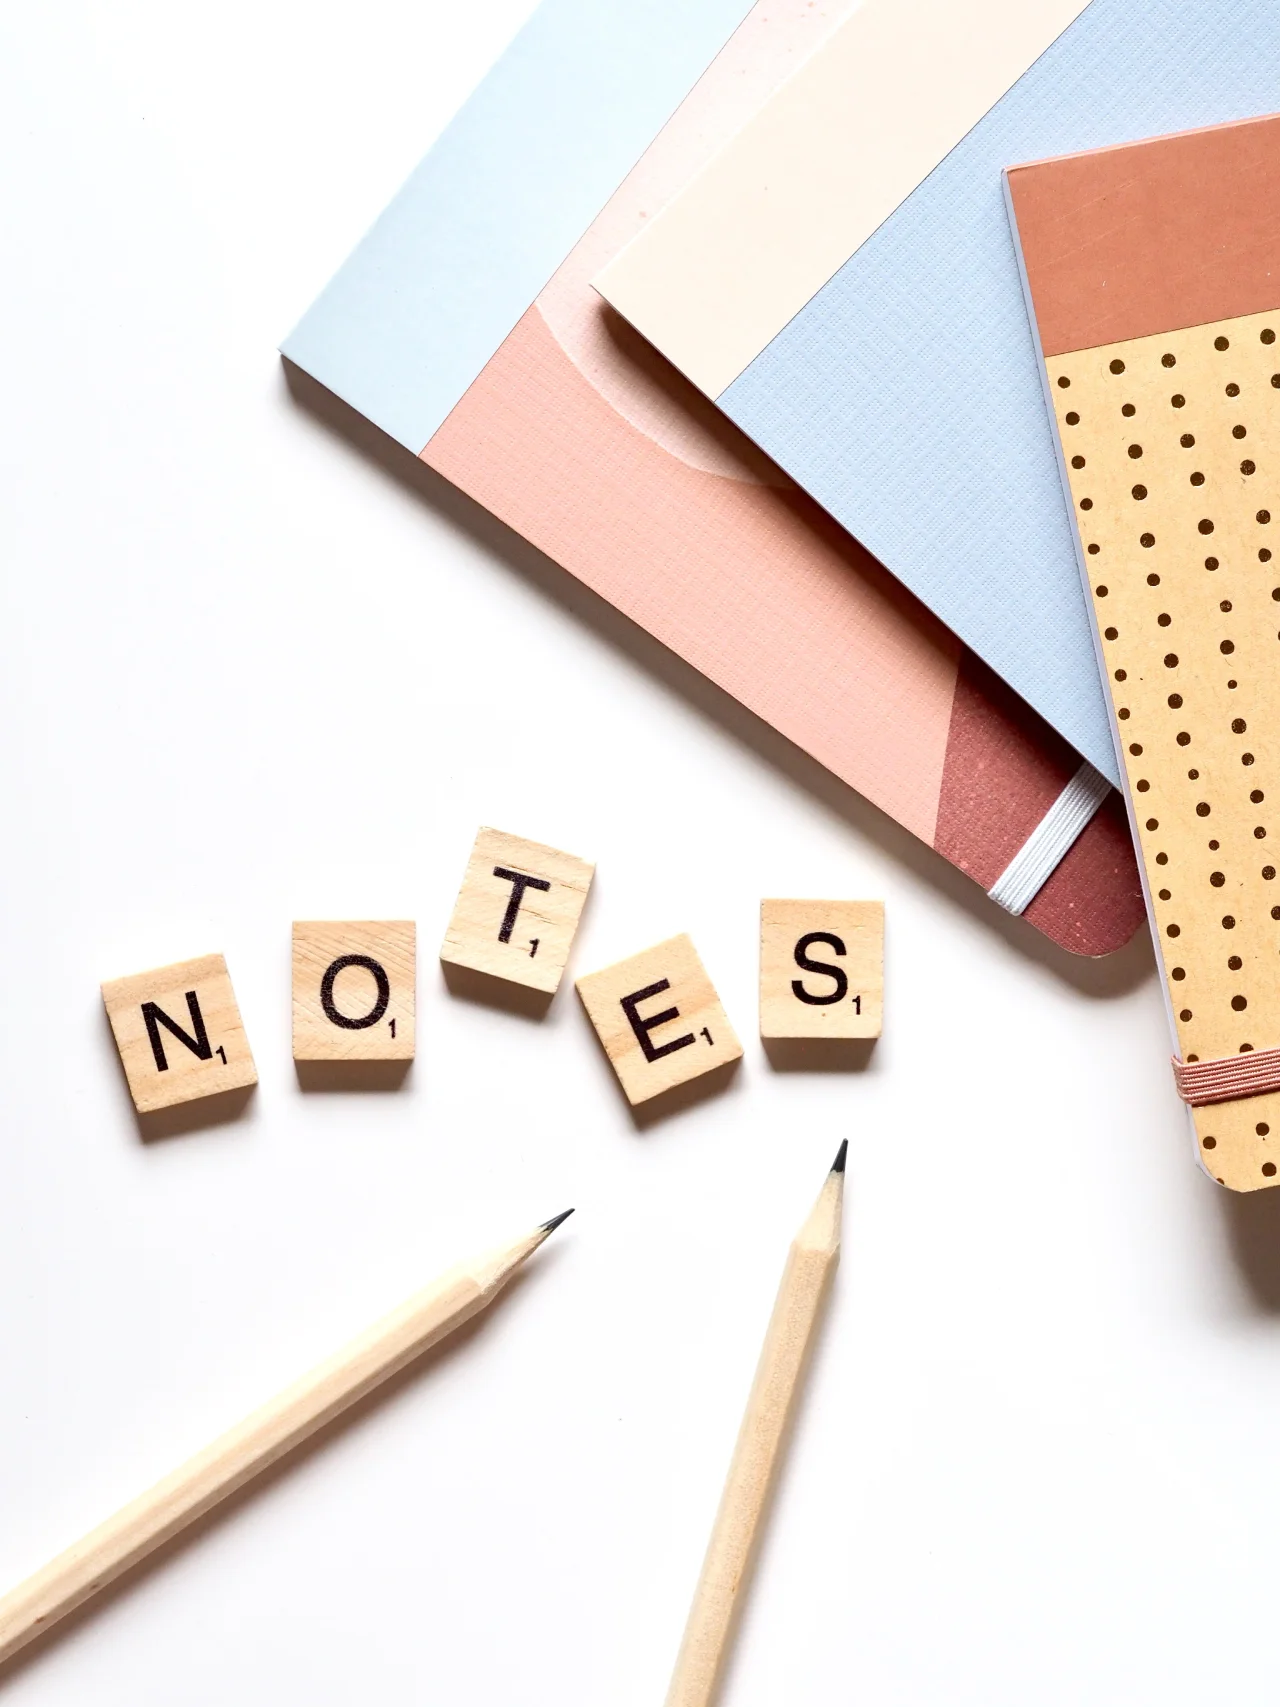 Carnets et crayons avec lettres en bois formant le mot notes posés sur une table